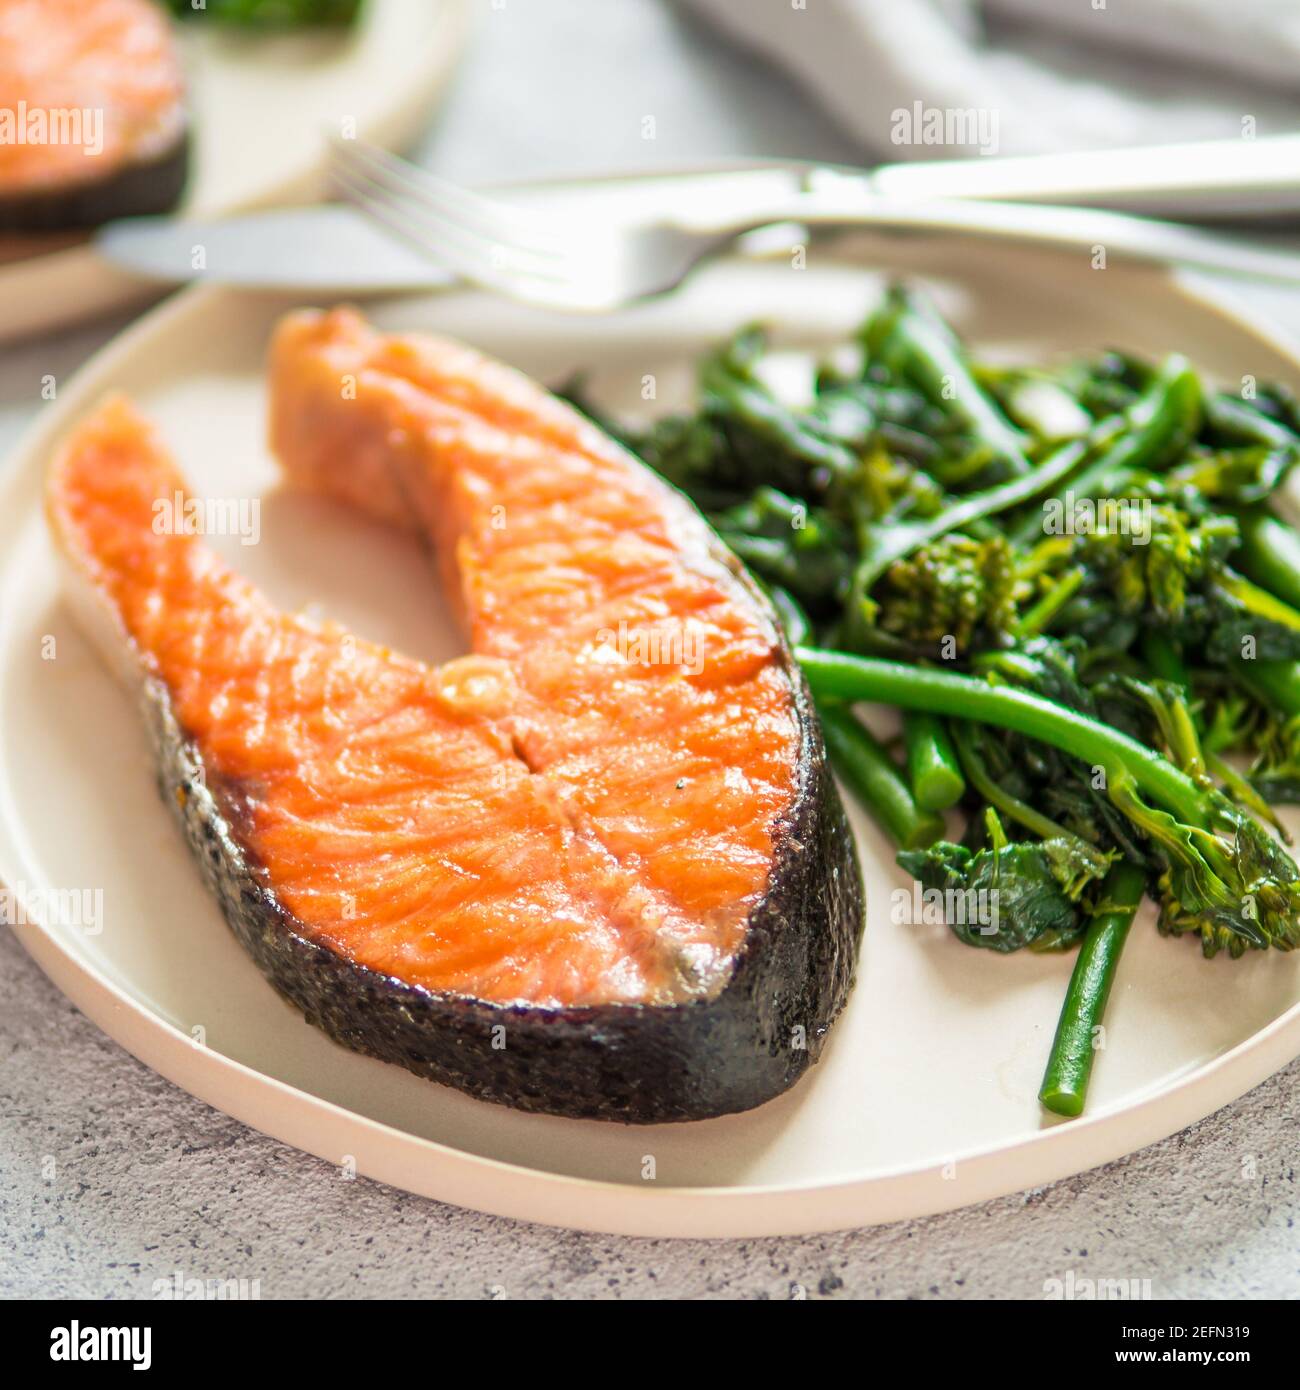 Prêt-à-manger du steak de saumon grillé et verts - brocoli ou bébé épinards et broccolini artisanat rustique sur plaque sur fond gris. Régime céto plat. Banque D'Images